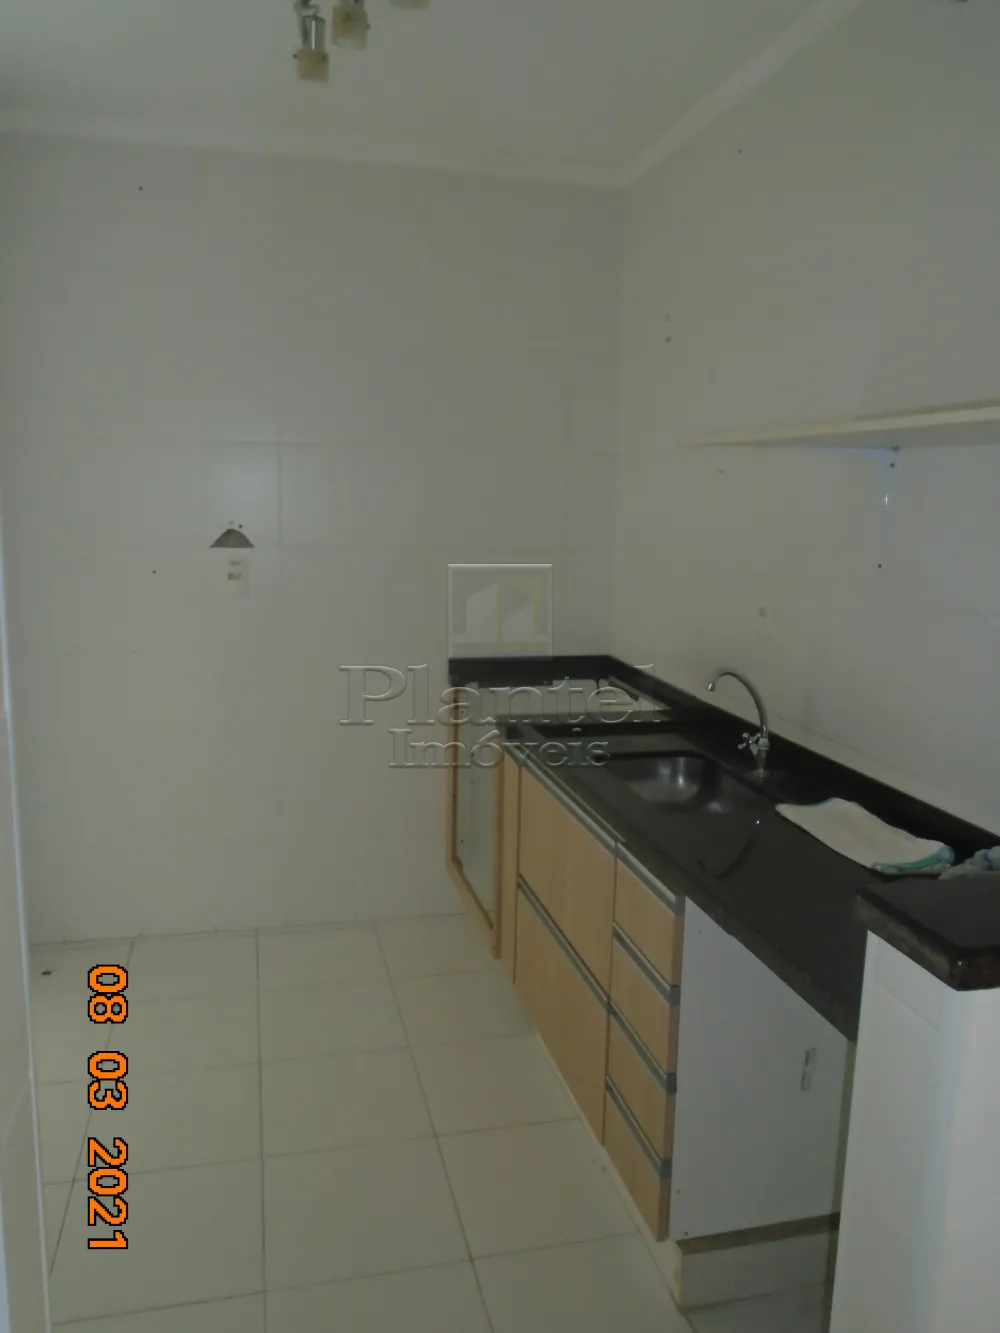 Imobiliária Ribeirão Preto - Plantel Imóveis - Apartamento - Residencial E Comercial Palmar - Ribeirão Preto